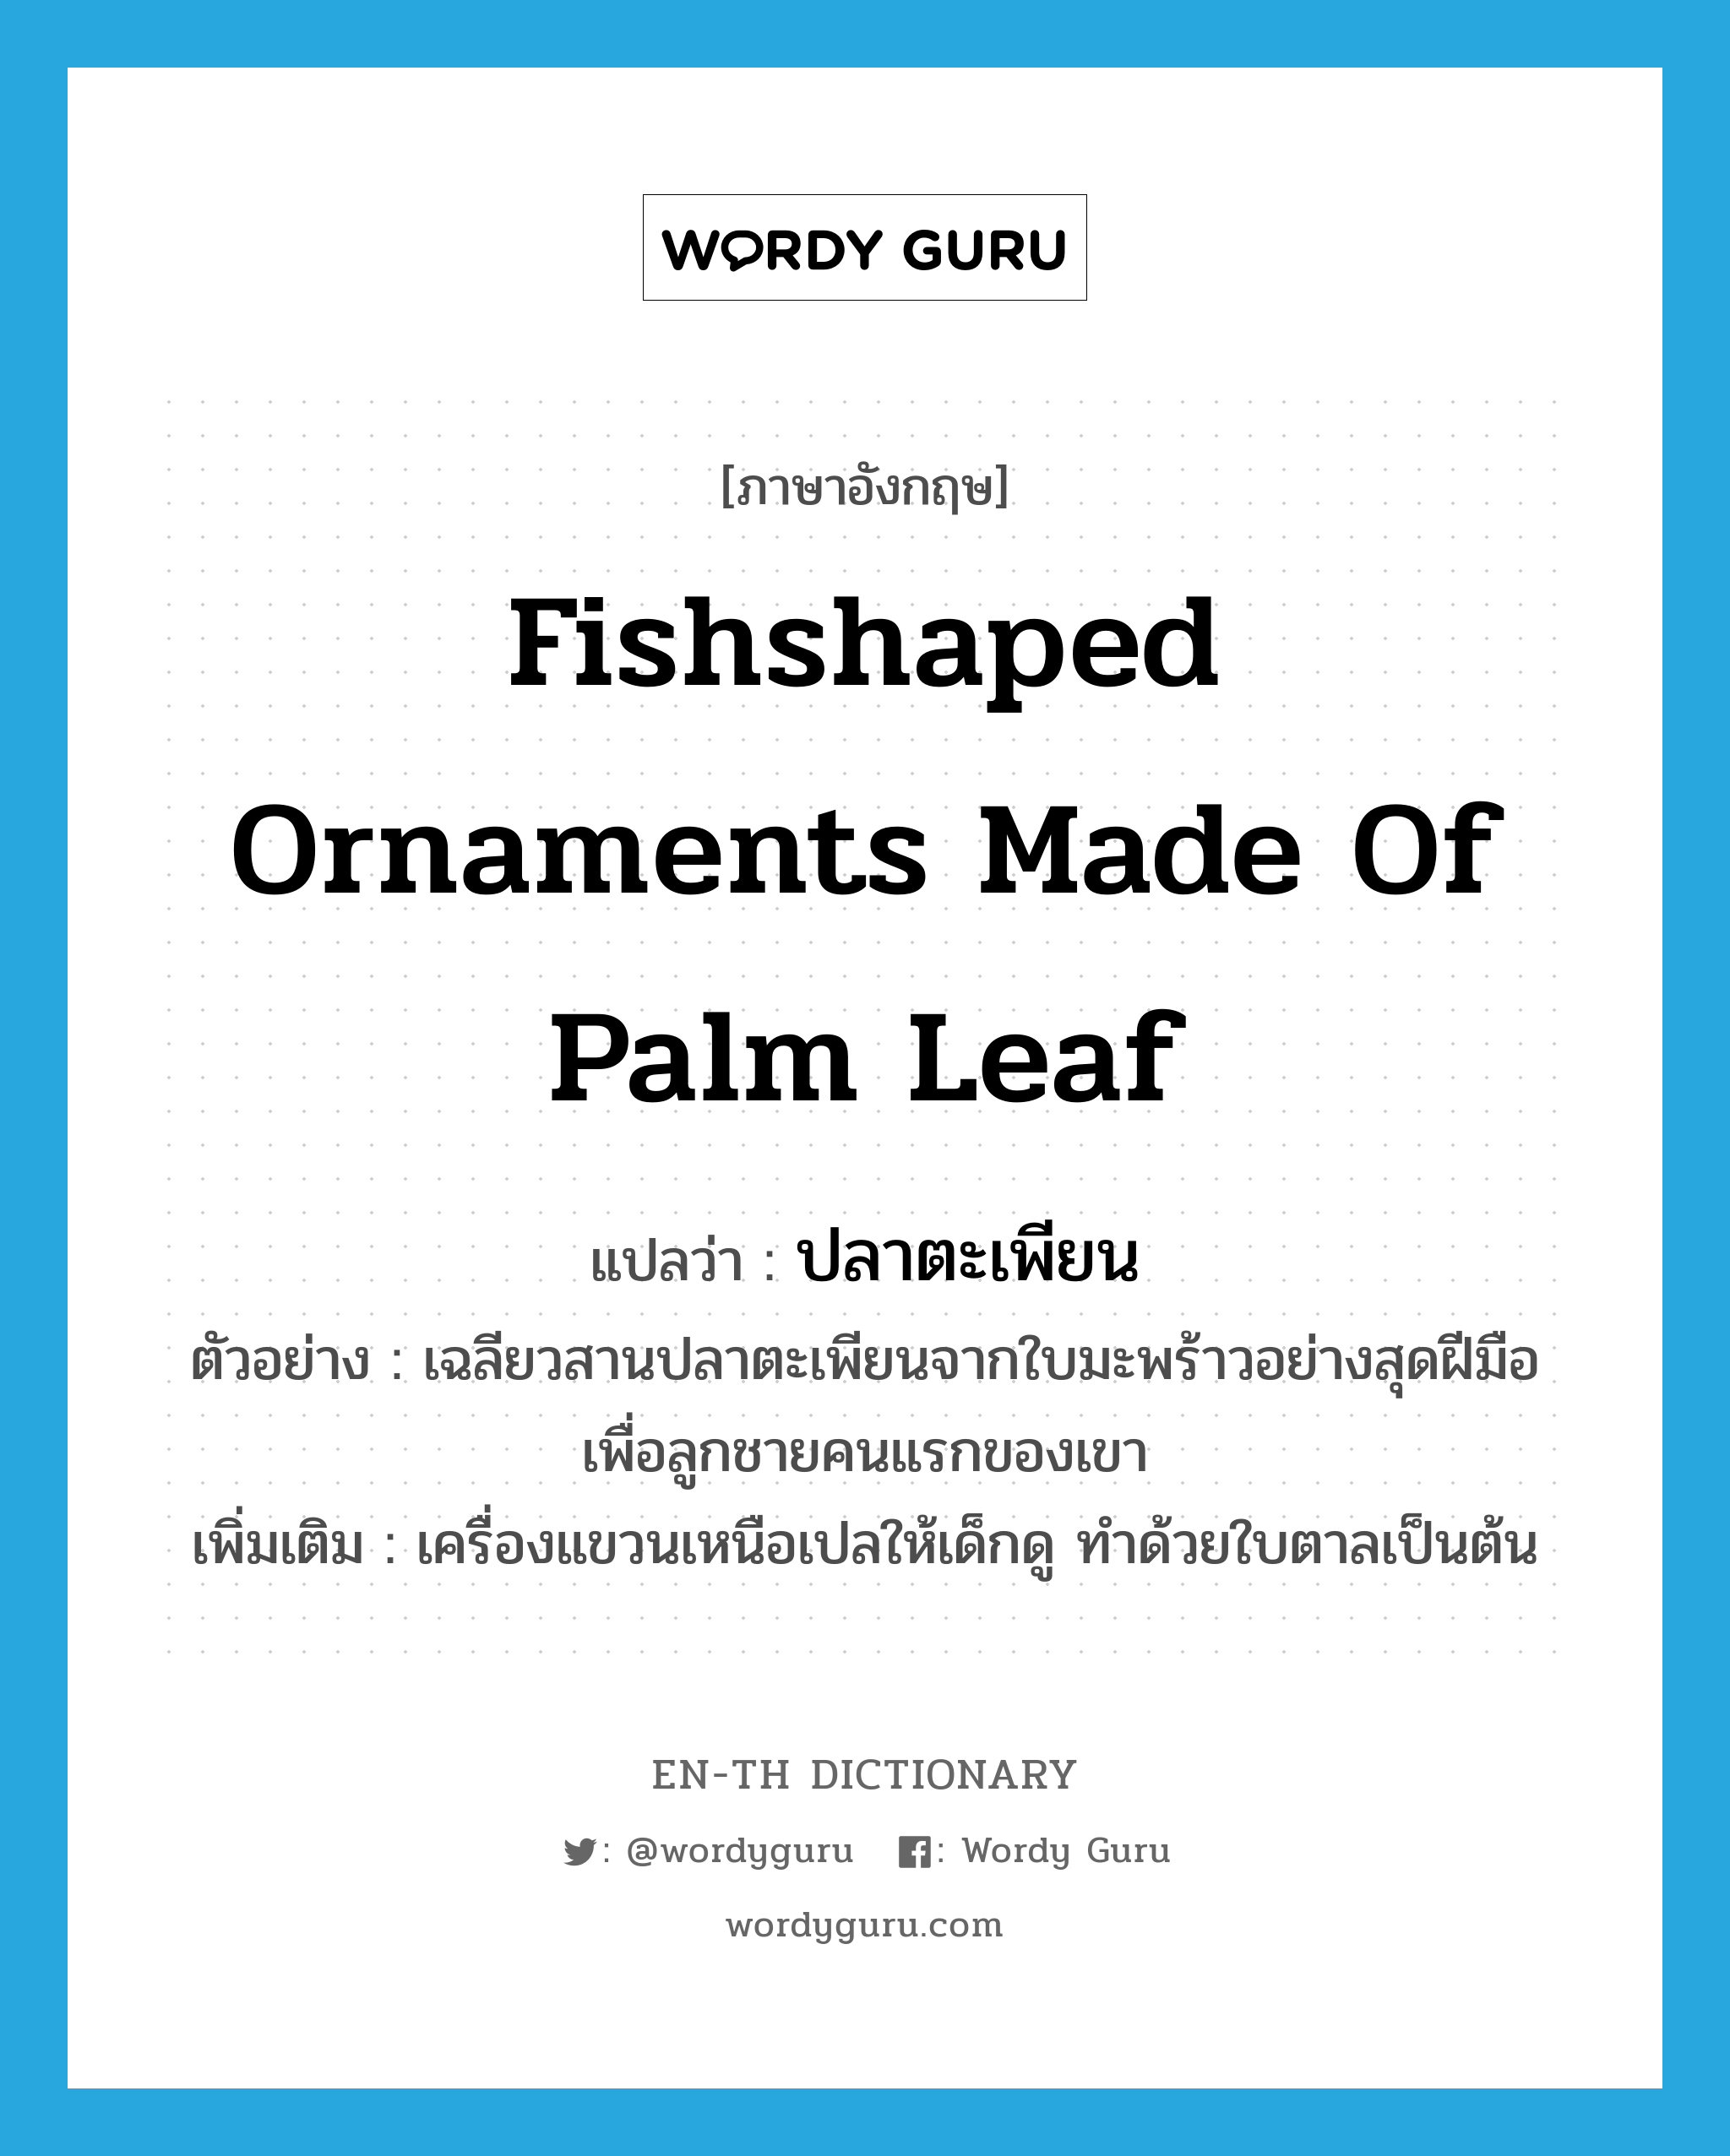 ปลาตะเพียน ภาษาอังกฤษ?, คำศัพท์ภาษาอังกฤษ ปลาตะเพียน แปลว่า fishshaped ornaments made of palm leaf ประเภท N ตัวอย่าง เฉลียวสานปลาตะเพียนจากใบมะพร้าวอย่างสุดฝีมือเพื่อลูกชายคนแรกของเขา เพิ่มเติม เครื่องแขวนเหนือเปลให้เด็กดู ทำด้วยใบตาลเป็นต้น หมวด N